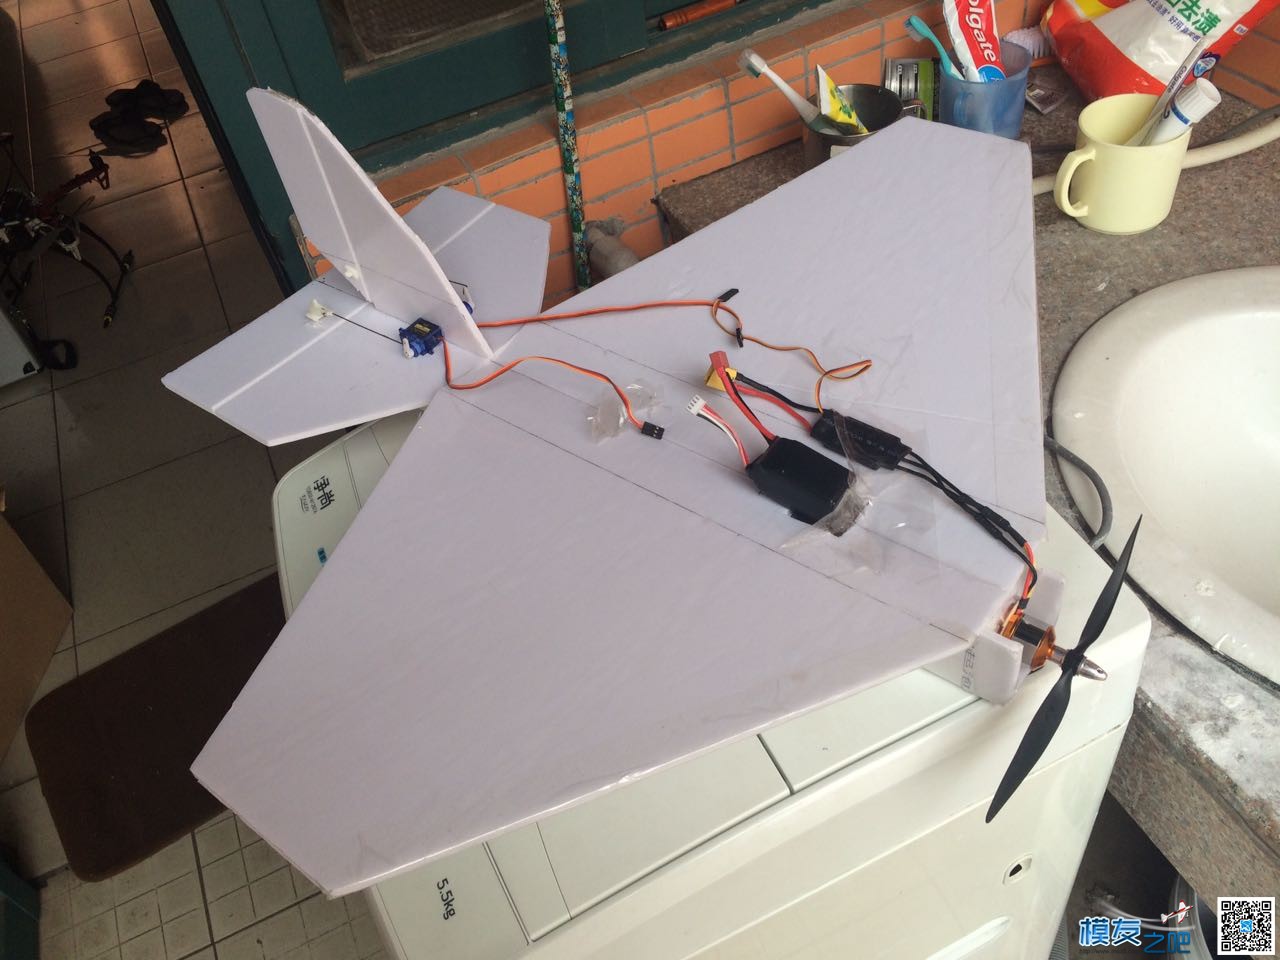 慢机飞翔号固定翼制作 固定翼,电池,舵机,电调,图纸 作者:飞越天际线 1072 